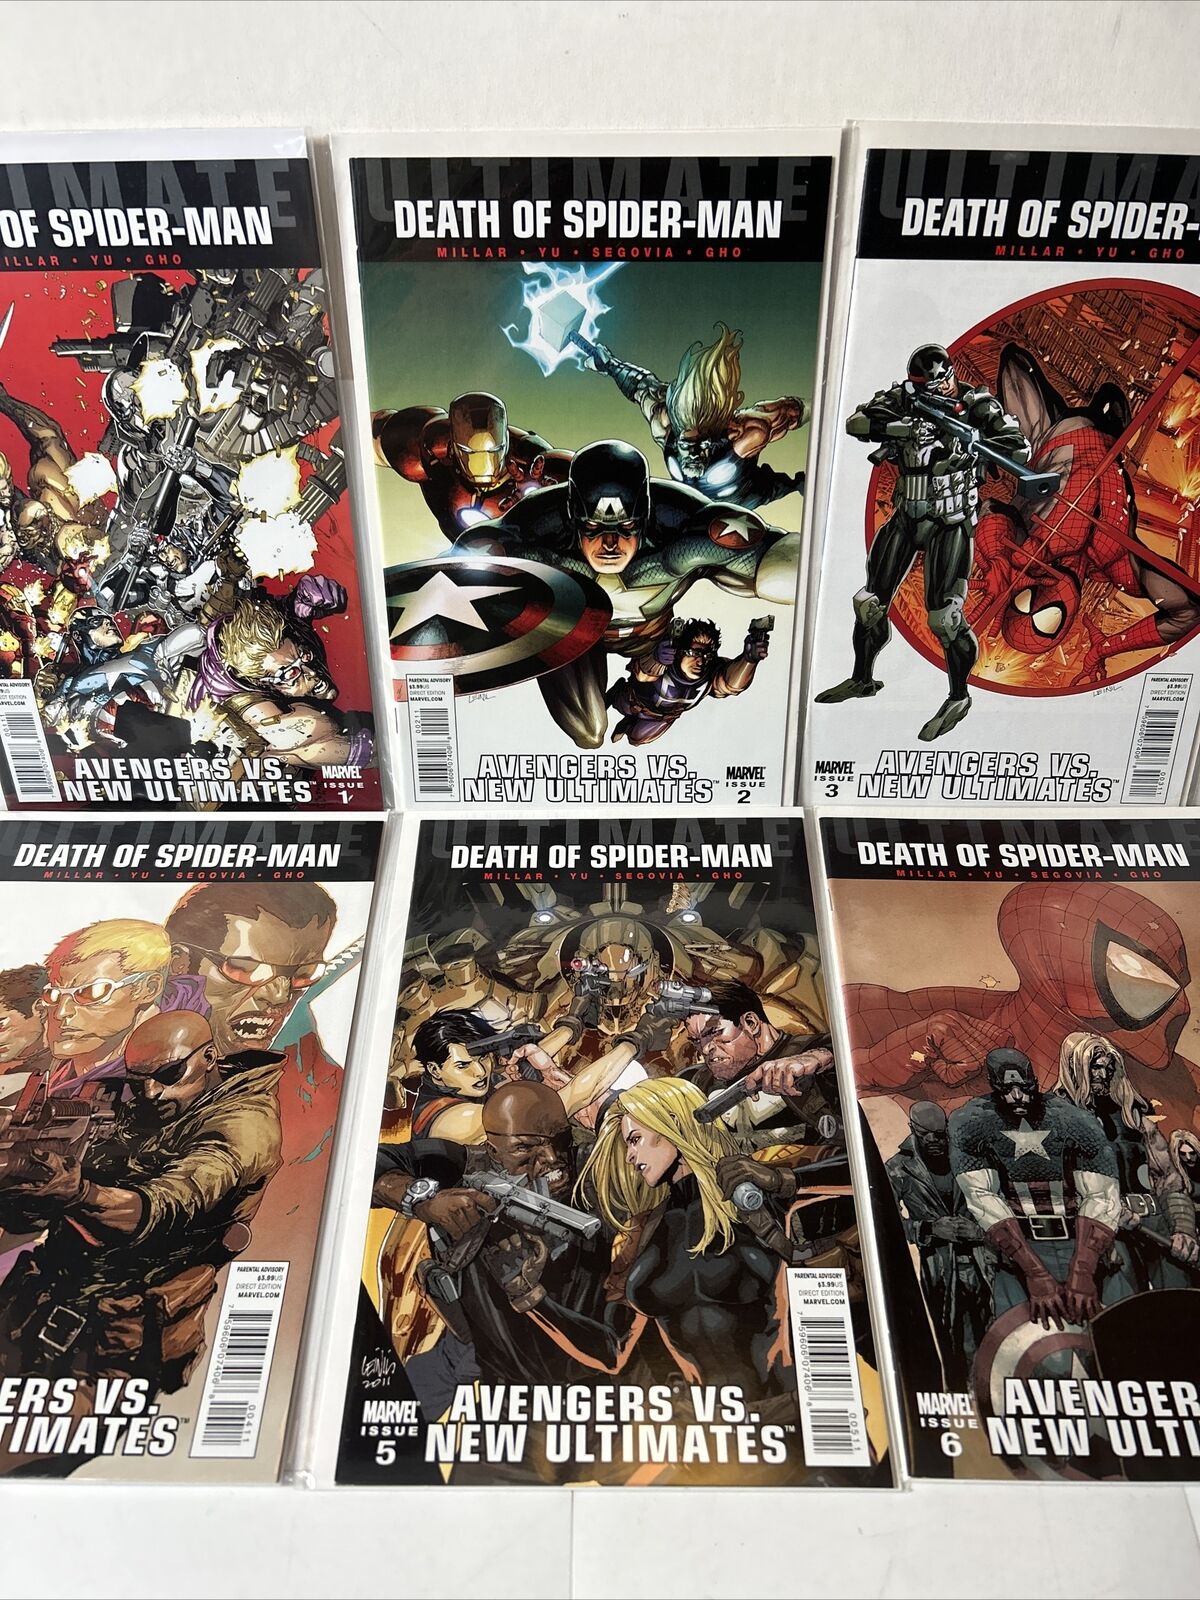 Ultimate Death of Spider-Man: Avengers V. New Ultimates #1-6 Com. (Marvel 2011)